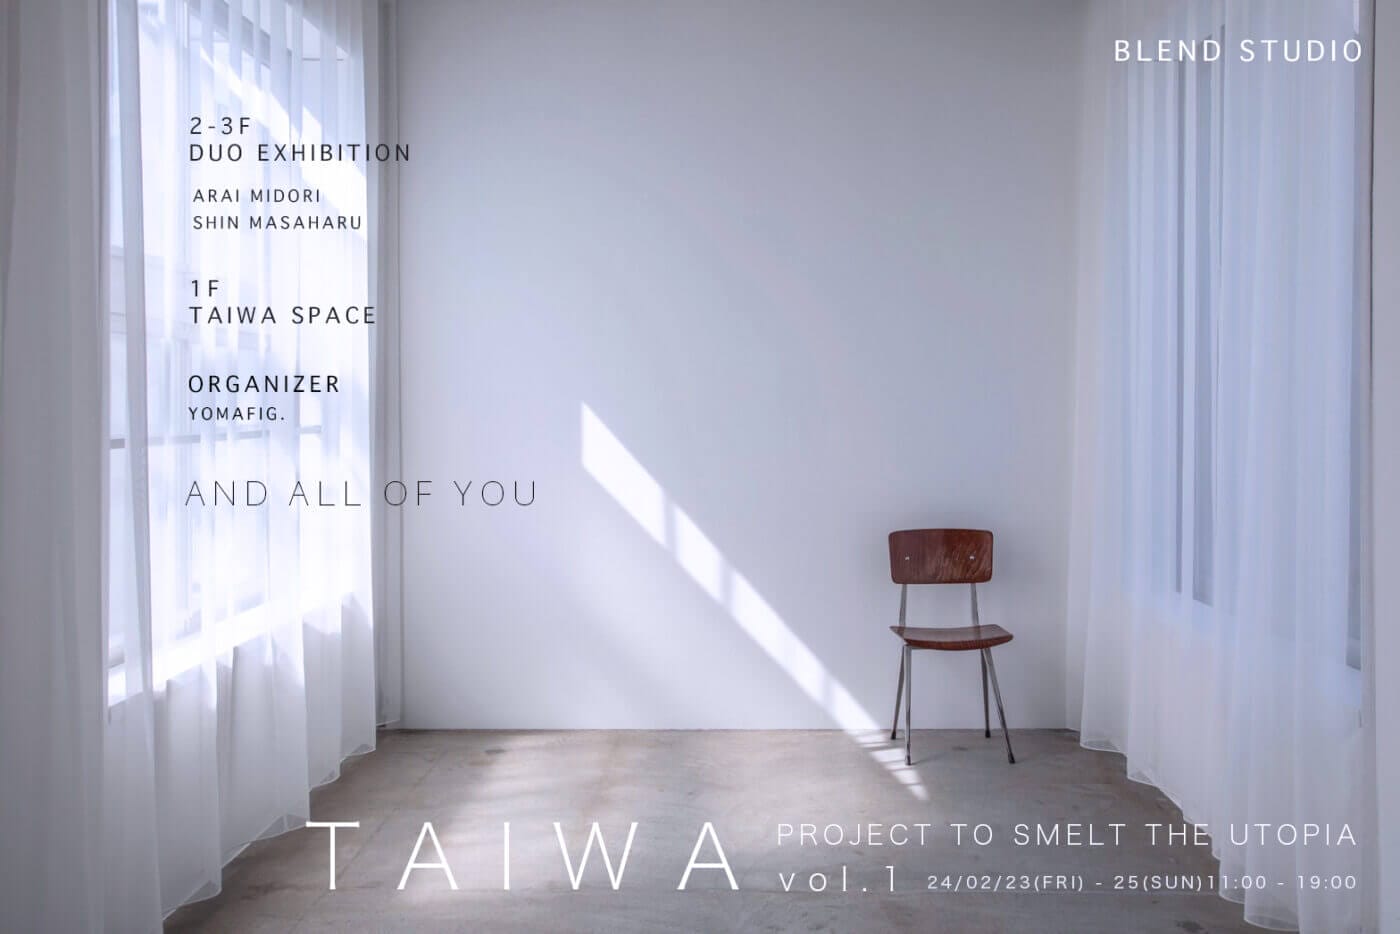 現代美術作家らが「対話」をテーマに企画した実験的イベント「TAIWA vol.1 ーproject to smelt the utopiaー」、BLEND STUDIOにて開催。